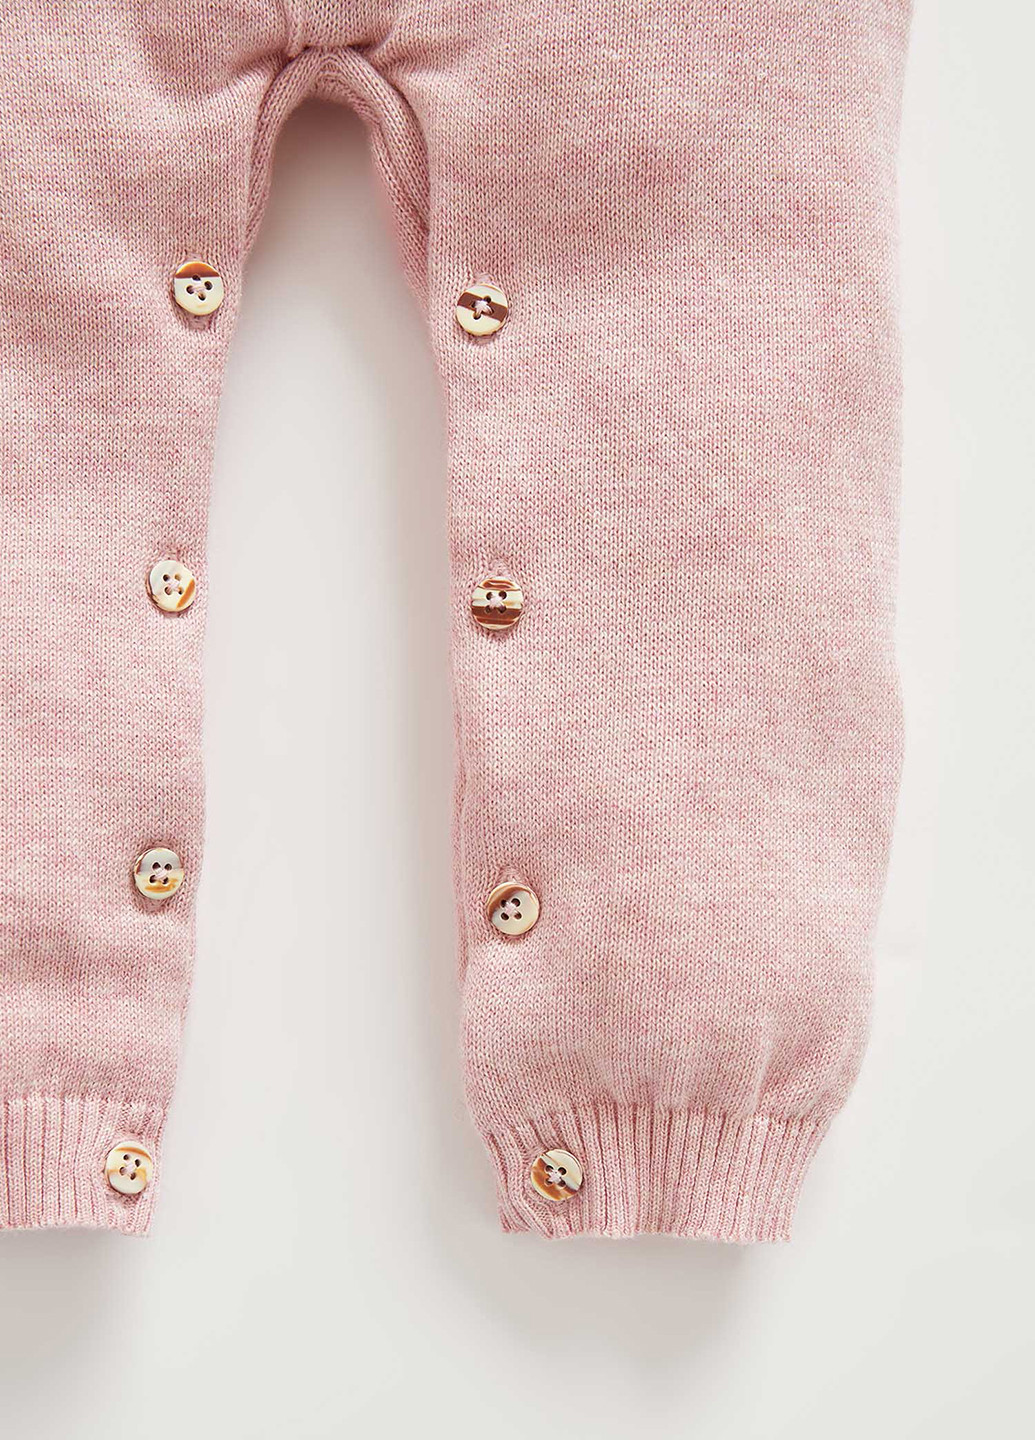 Комбинезон DeFacto комбинезон-брюки орнамент светло-розовый кэжуал хлопок